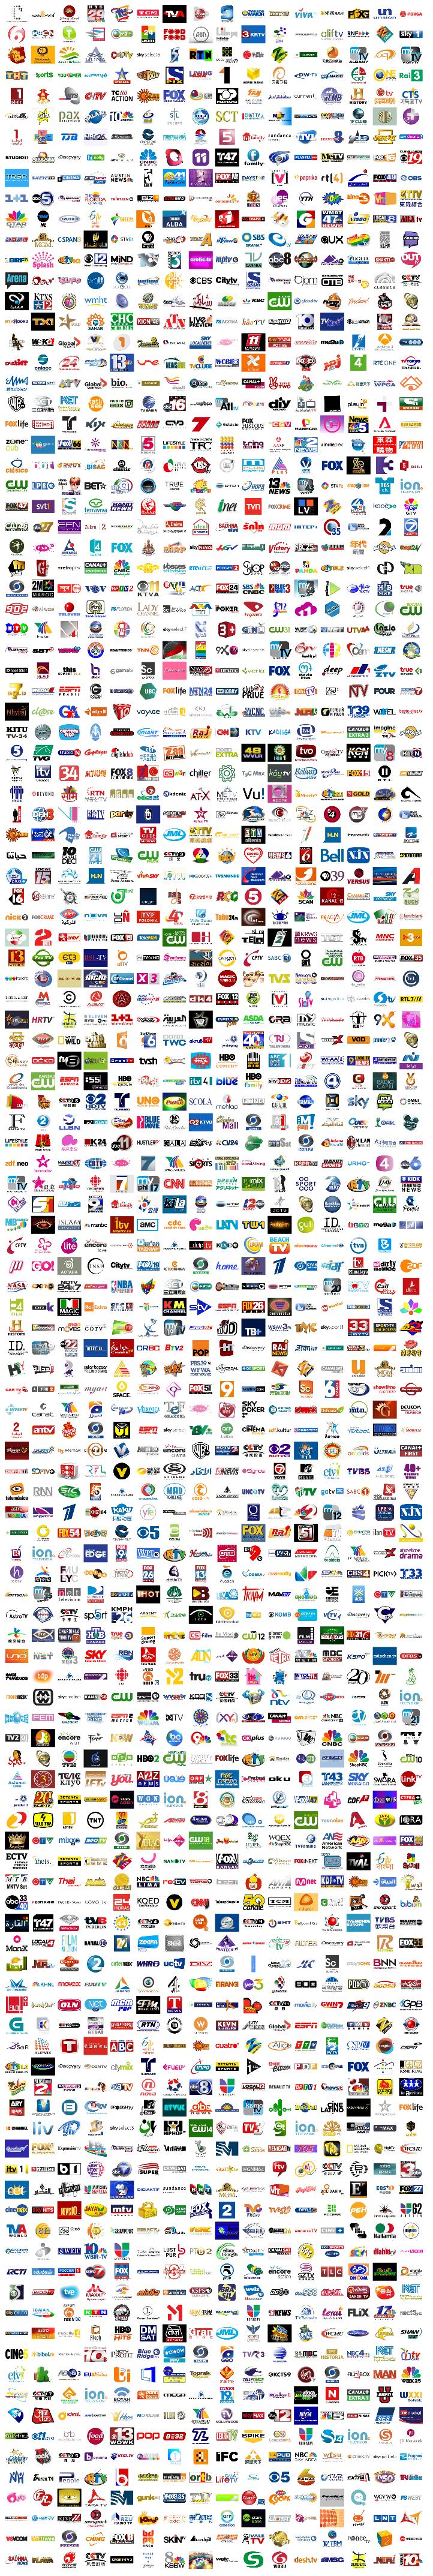 9.000 TV logos